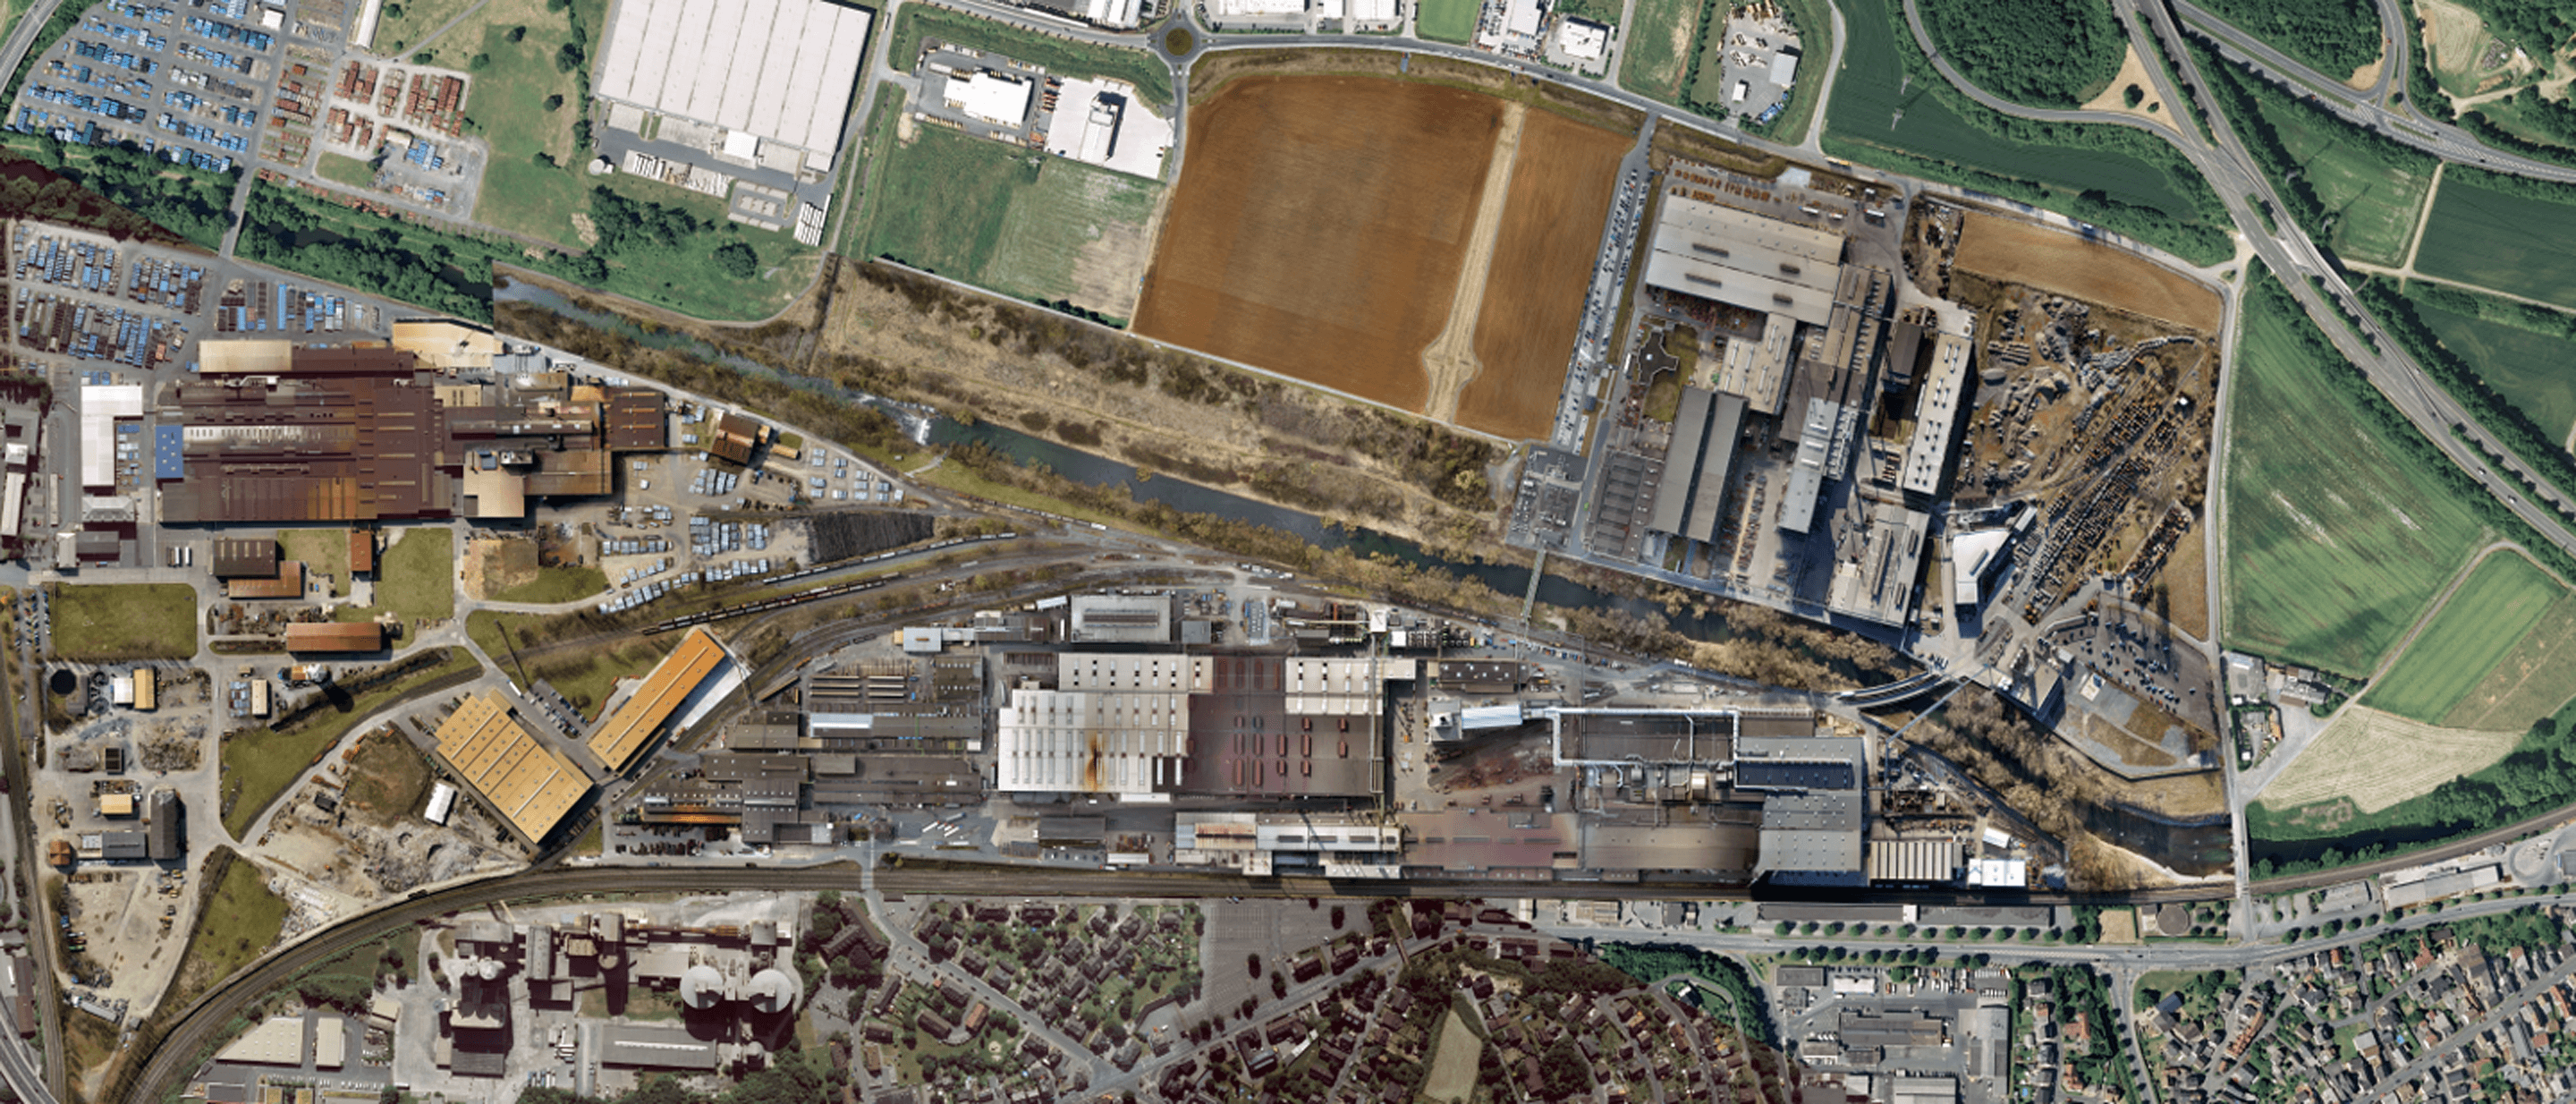 Luftbildaufnahme des Unternehmens und des Produktionsstandorts